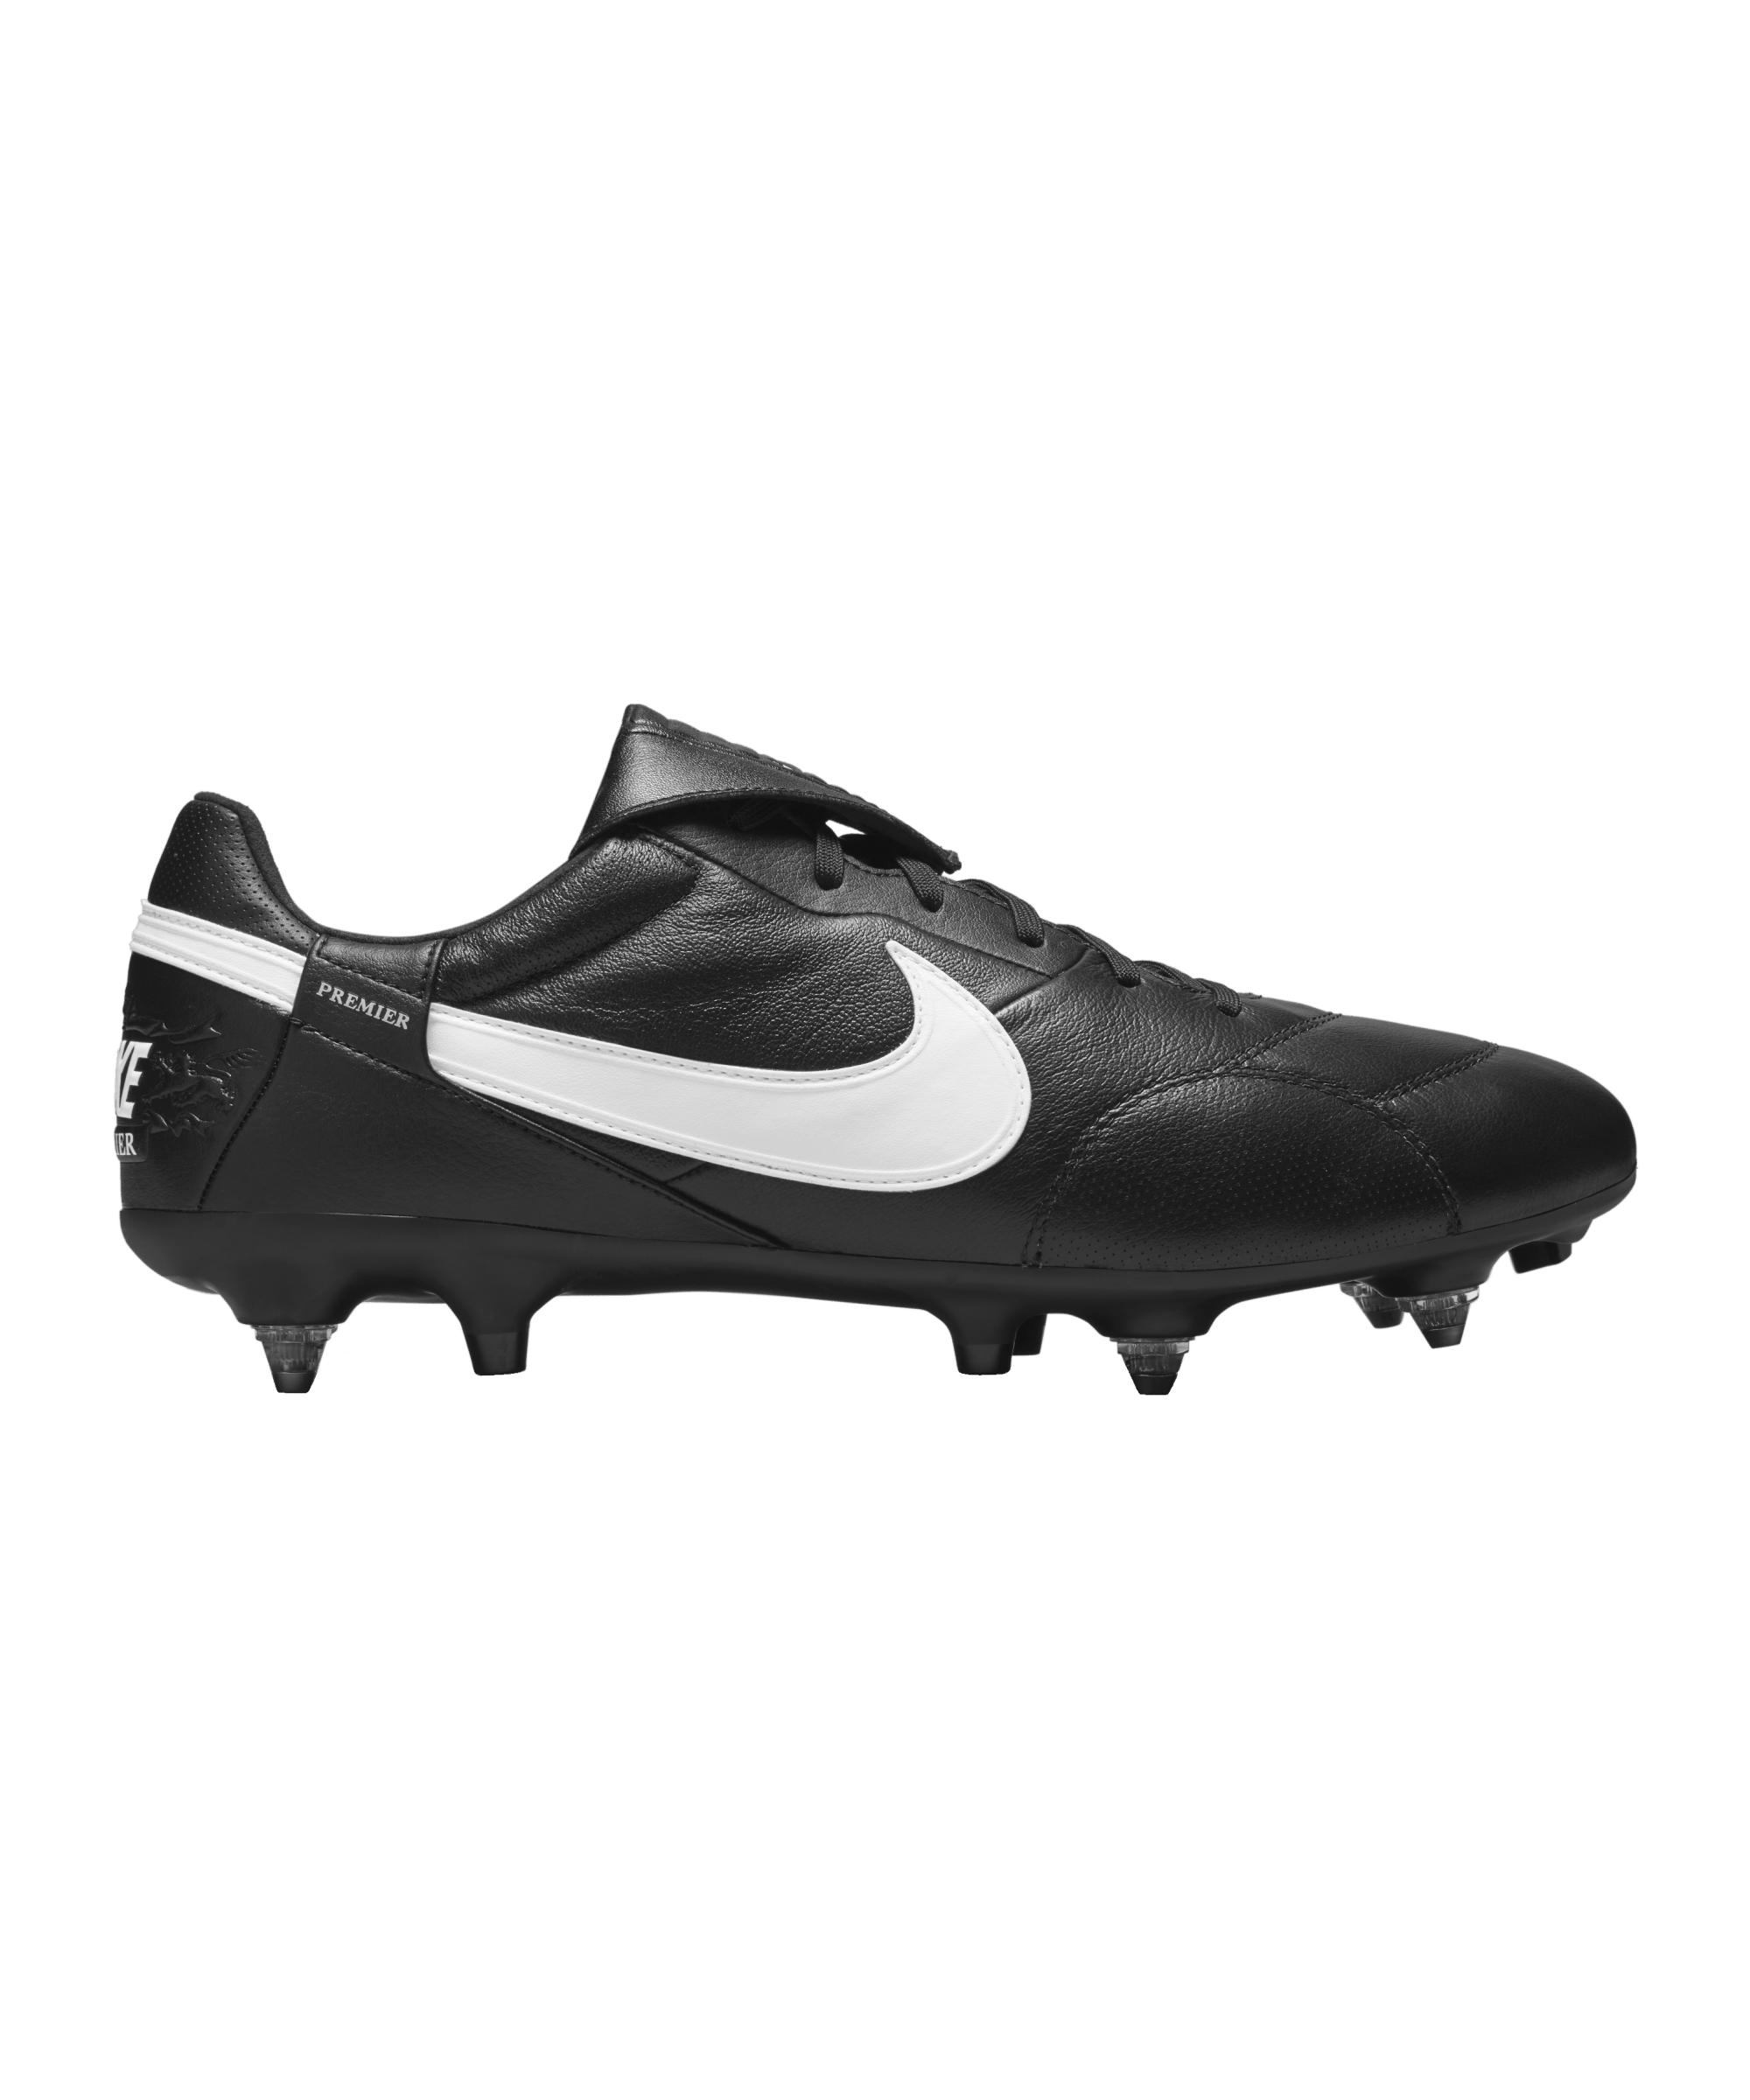 Nike Fußballschuh Premier III SG-Pro AC schwarz weiß F010